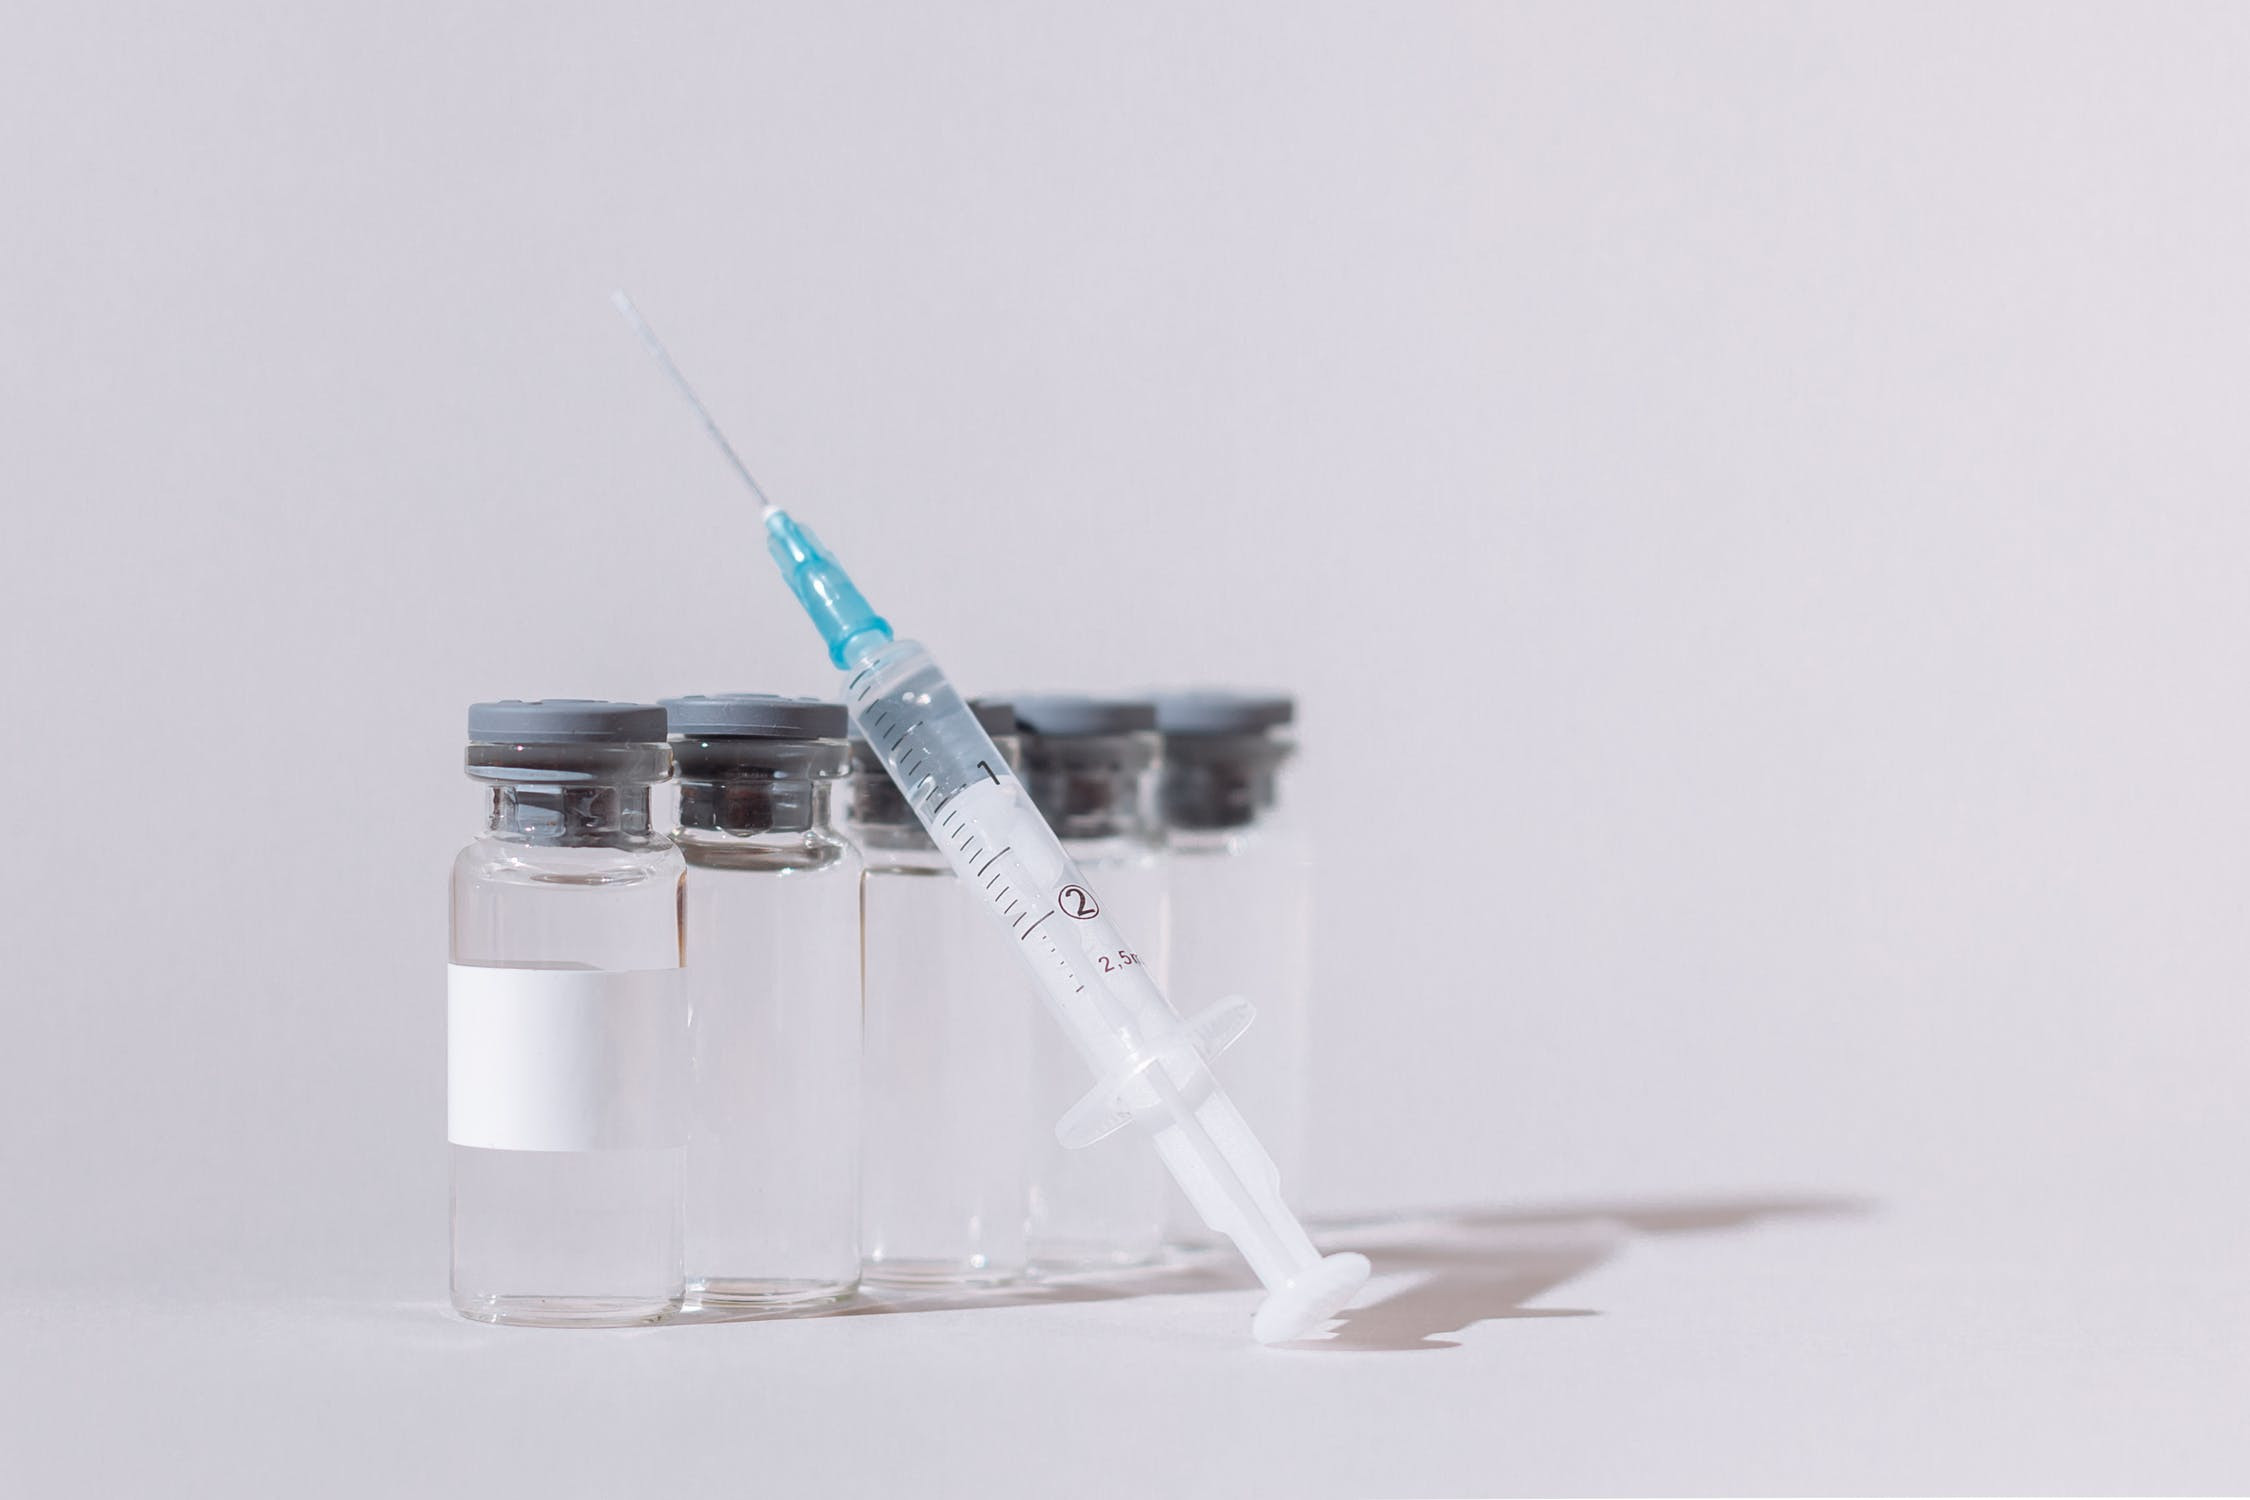 Μπουρλά: Σε τρία χρόνια μπορεί να έχουμε εμβόλιο για τον καρκίνο